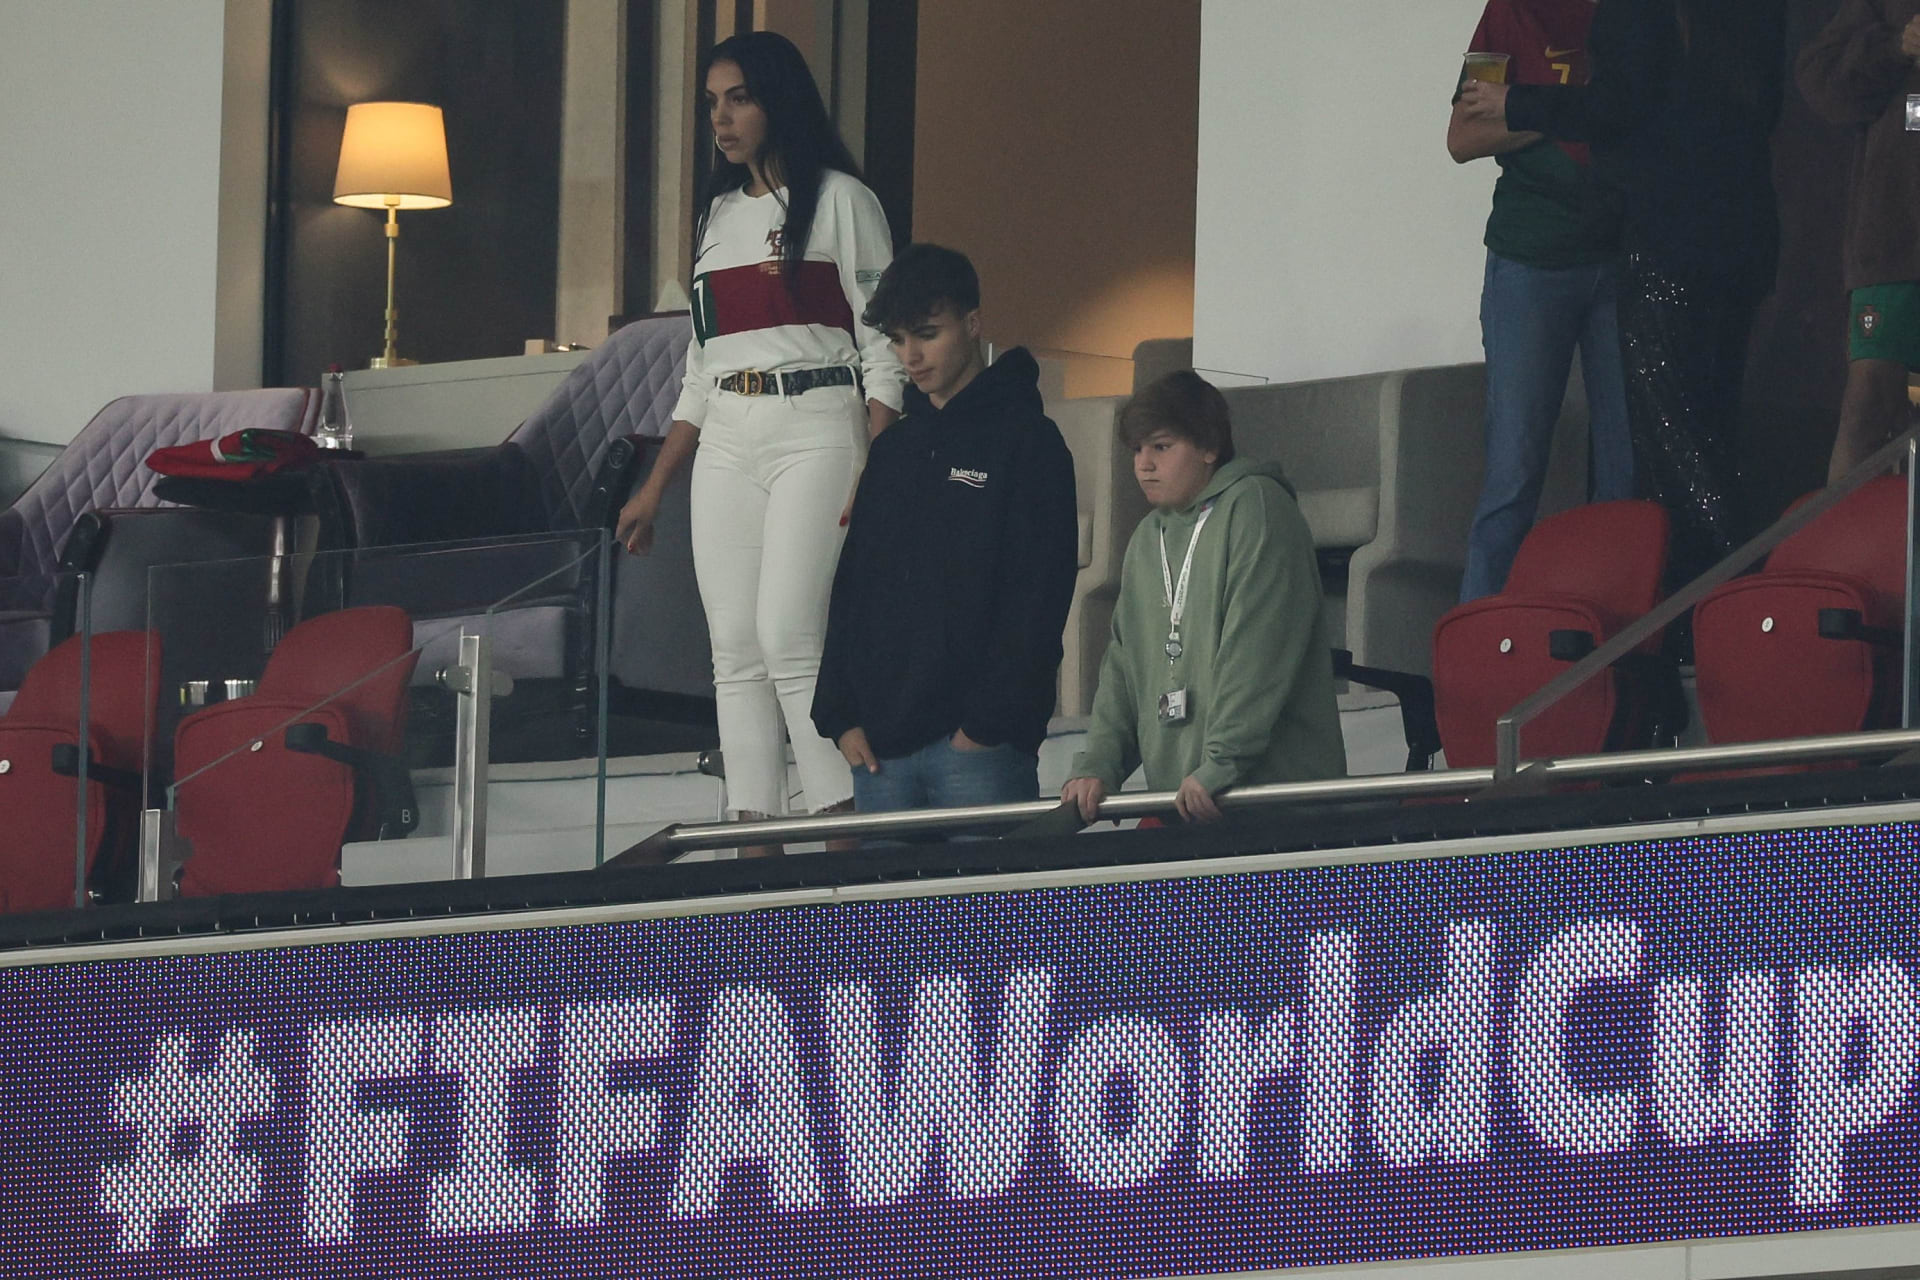 La cámara revela las reacciones de Georgina, la amiga de Ronaldo, al partido Marruecos-Portugal